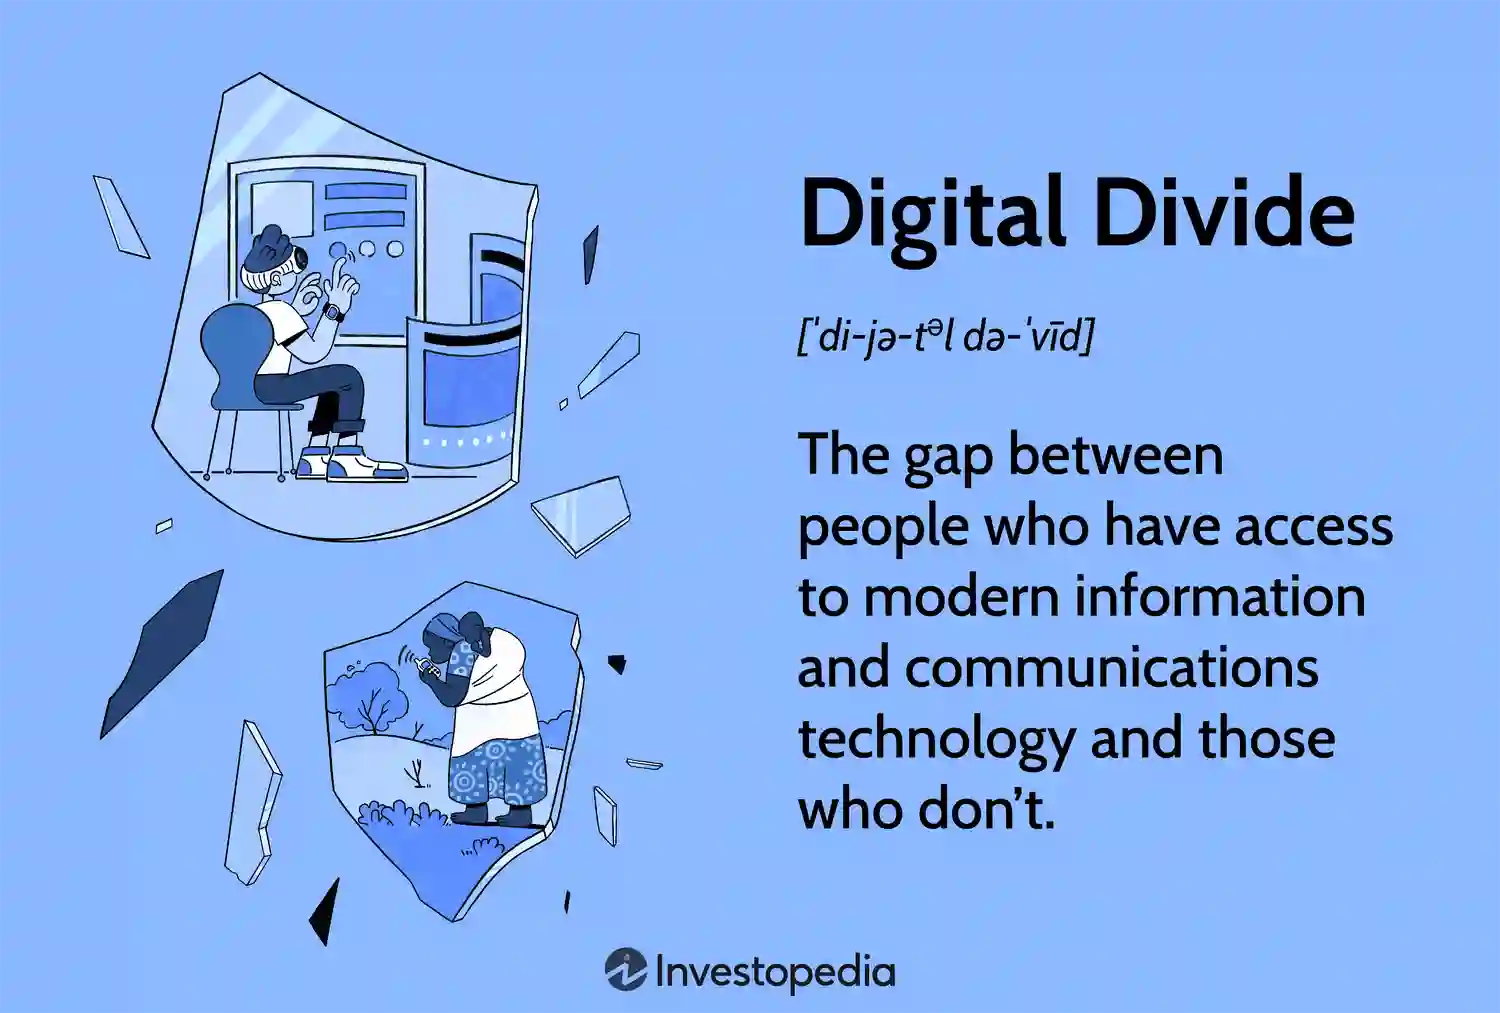  Digital Divide Definition